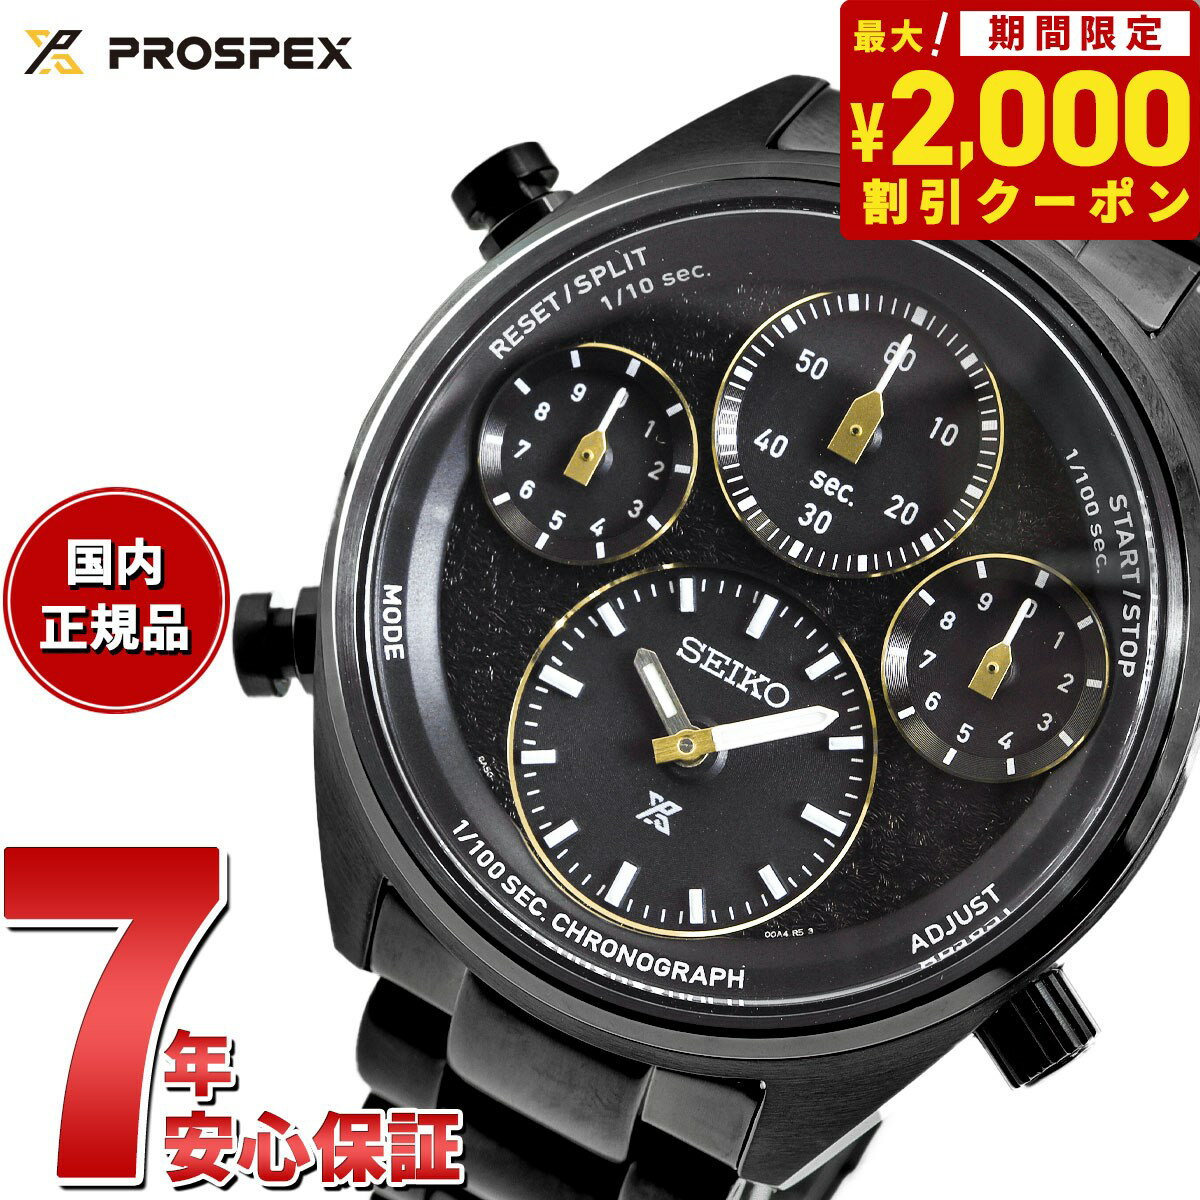 セイコー プロスペックス SBER007 スピードタイマー ソーラー クロノグラフ 世界陸上ブダペスト23 記念限定モデル 腕時計 SEIKO PROSPEX SPEEDTIMER